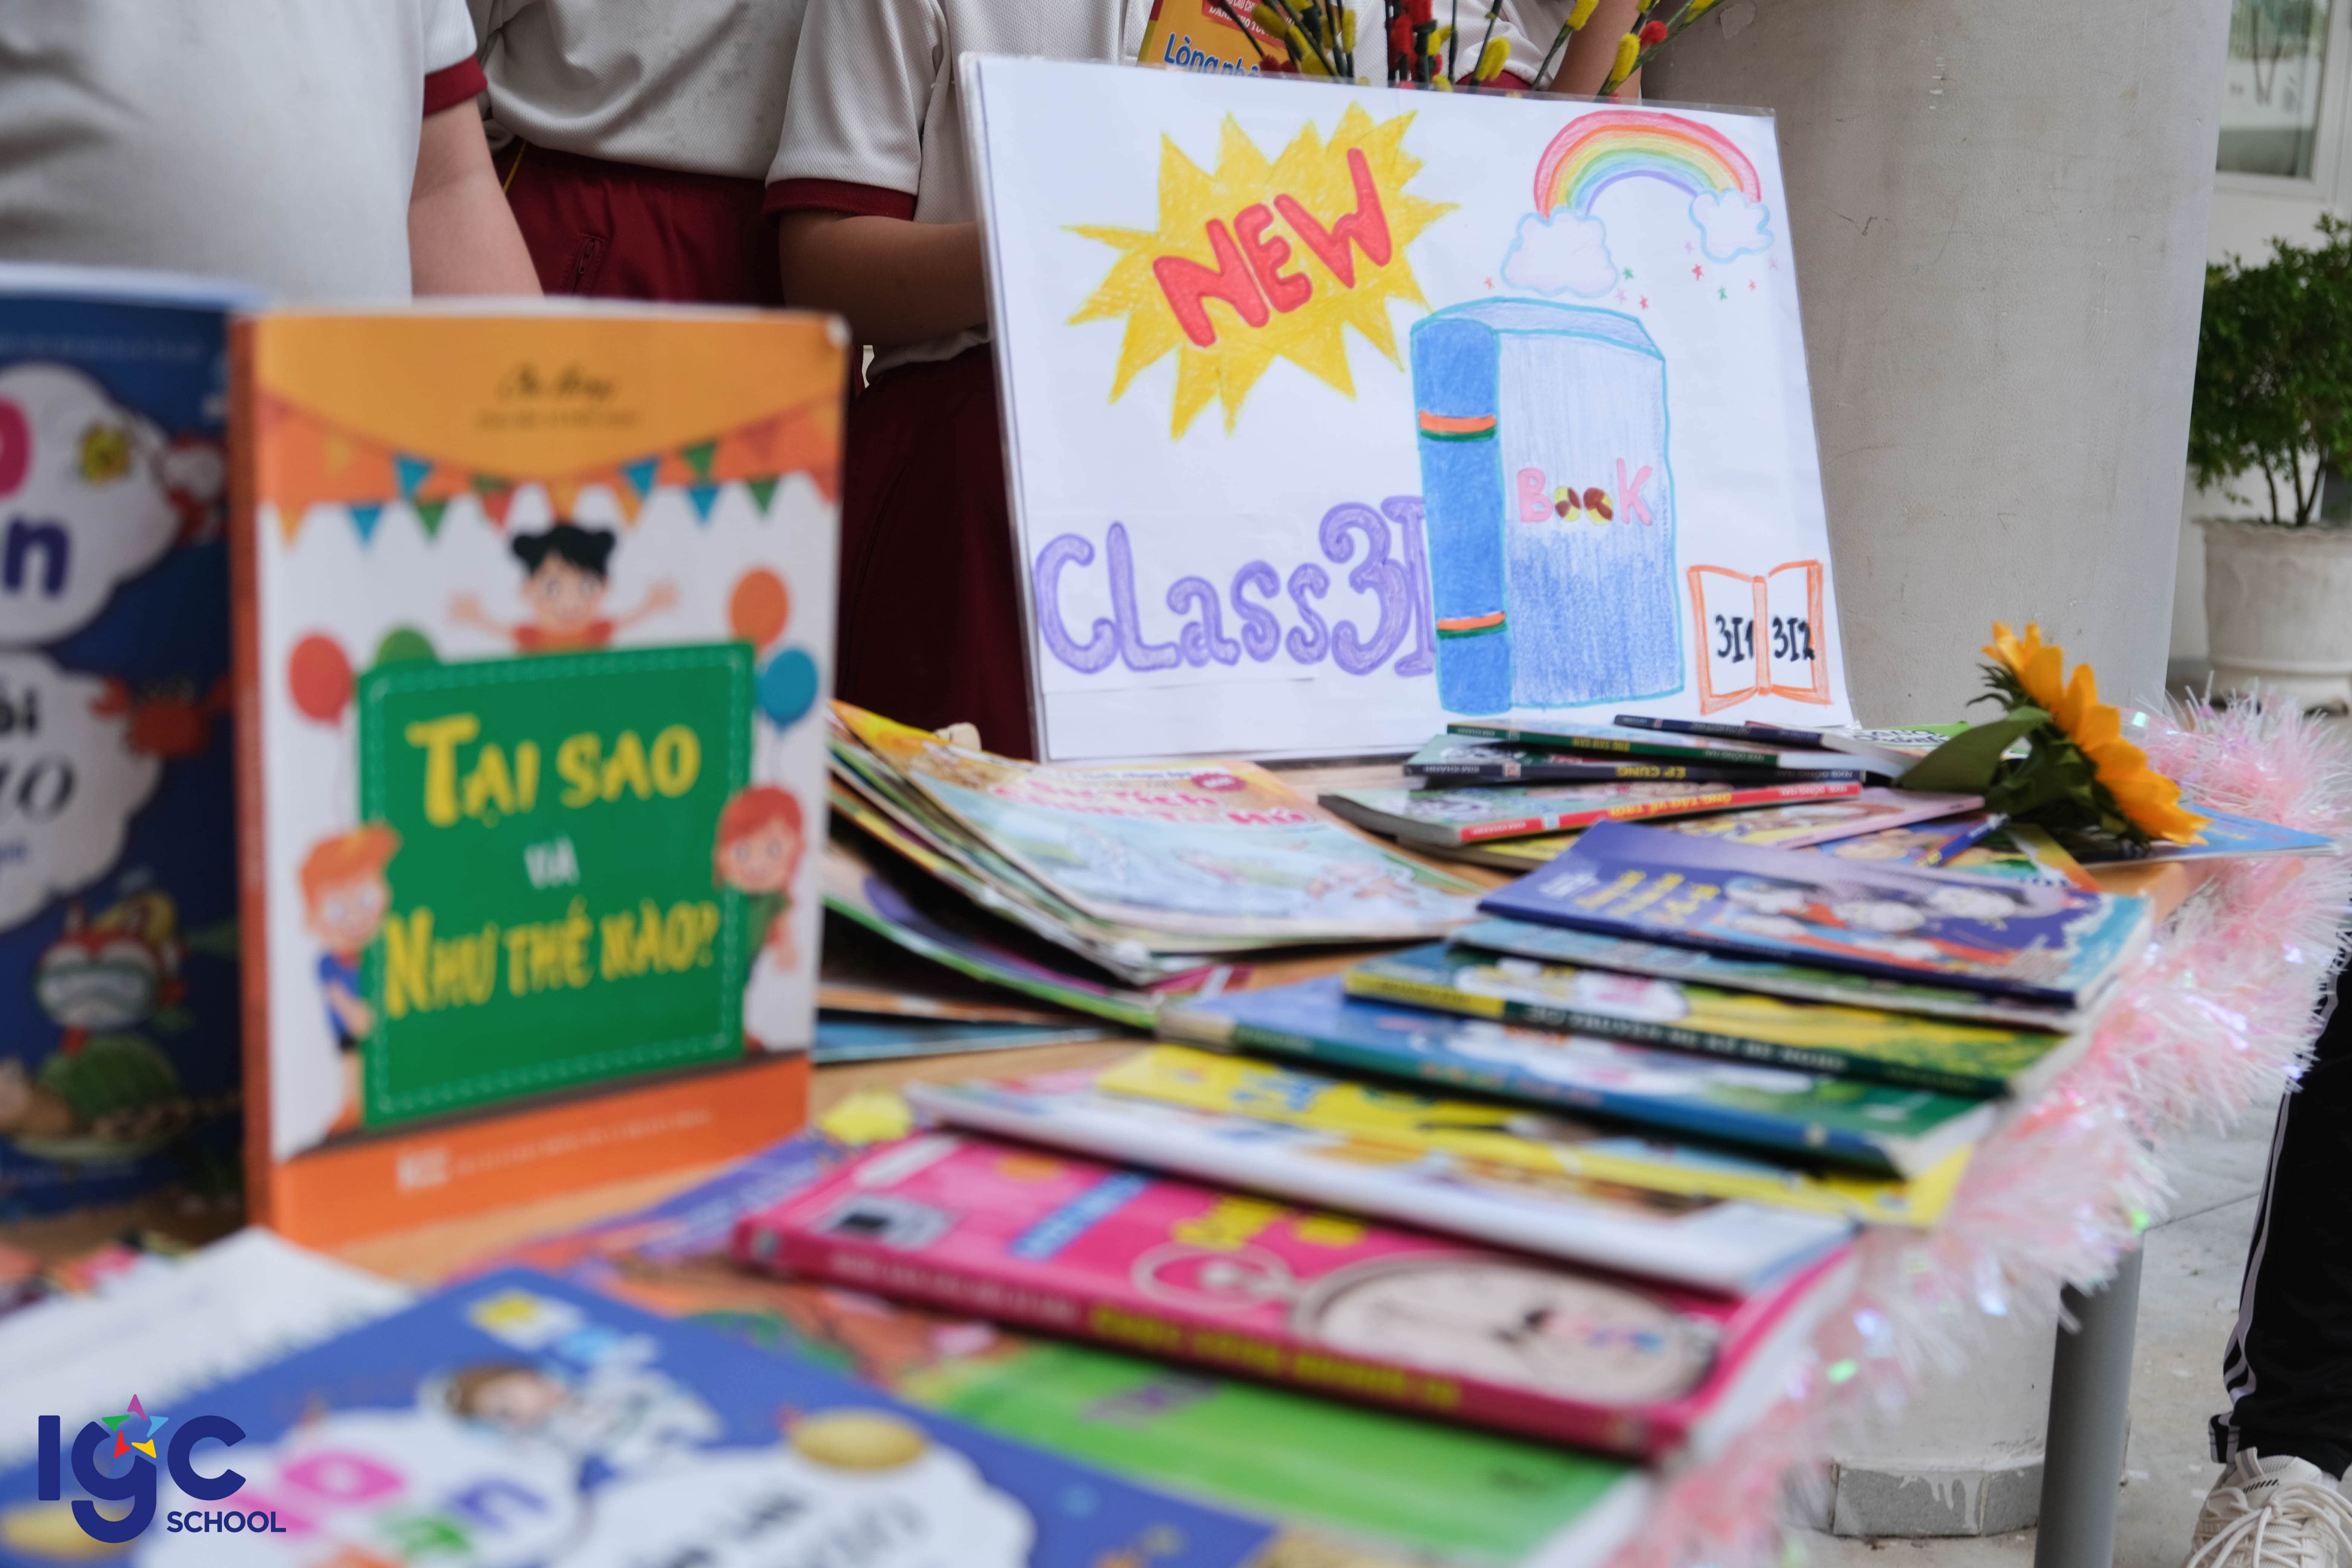 Ngày hội trao đổi sách - Book Exchange 2023 "Trao trang sách & nhận thêm kiến thức" giữa các học sinh trường IGC Tây Ninh